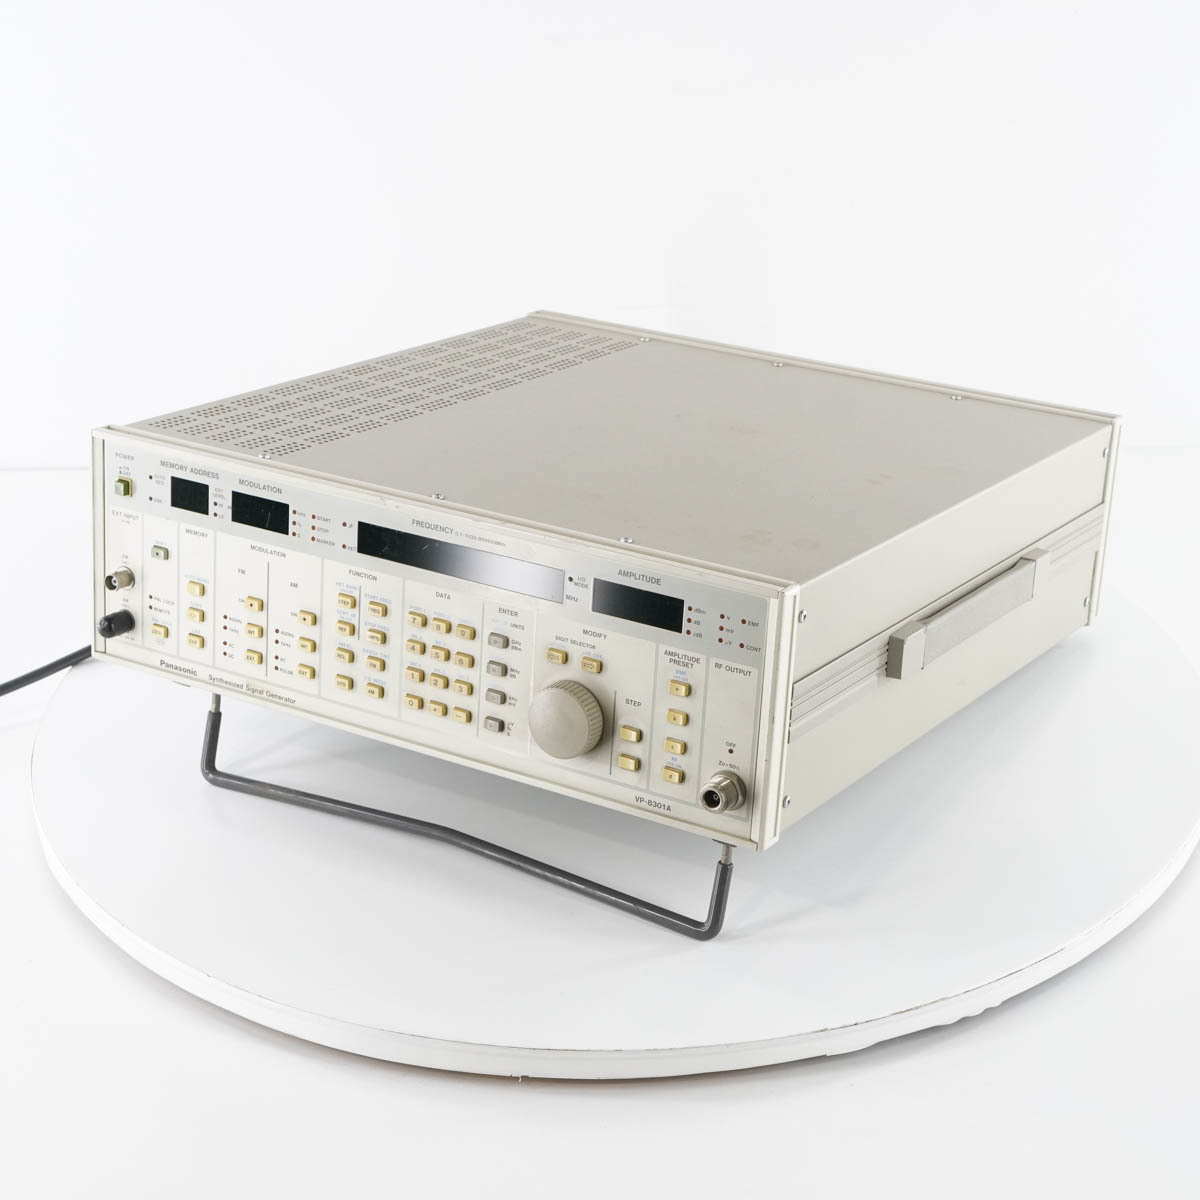 [JB] 現状販売 VP-8301A Panasonic パナソニック Synthesized Signal Generator シンセサイズド信号発生器 シグナルジェネ ...[05452-0136]_画像2